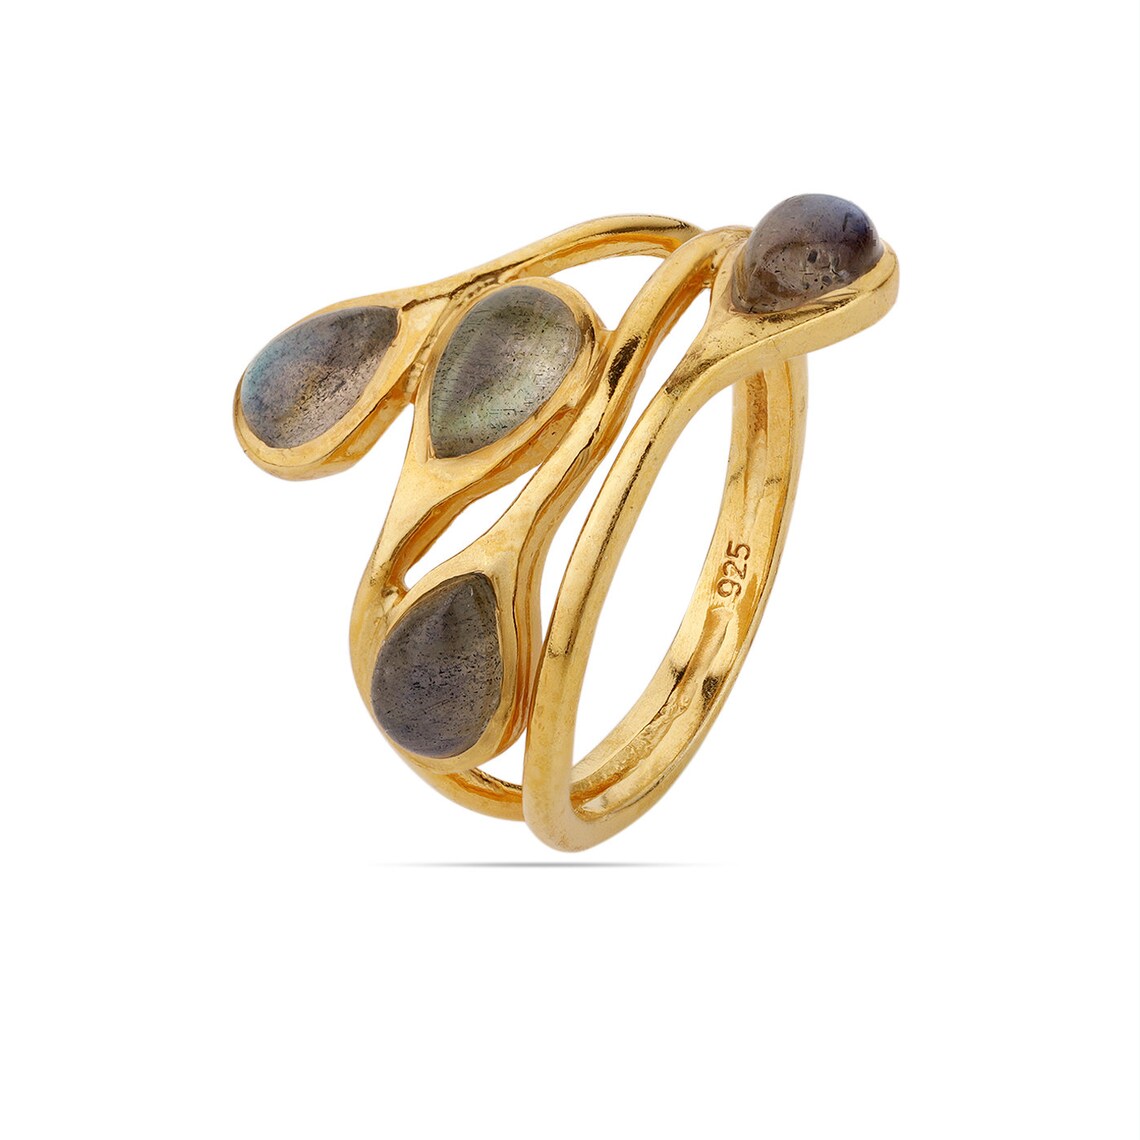 Multi Labradorite Ring, Pear Labradorite Gold Ring, Blue Labradorite Ring, Dainty Ring,Birthstone Ring, Statement Ring, Multitone Ring